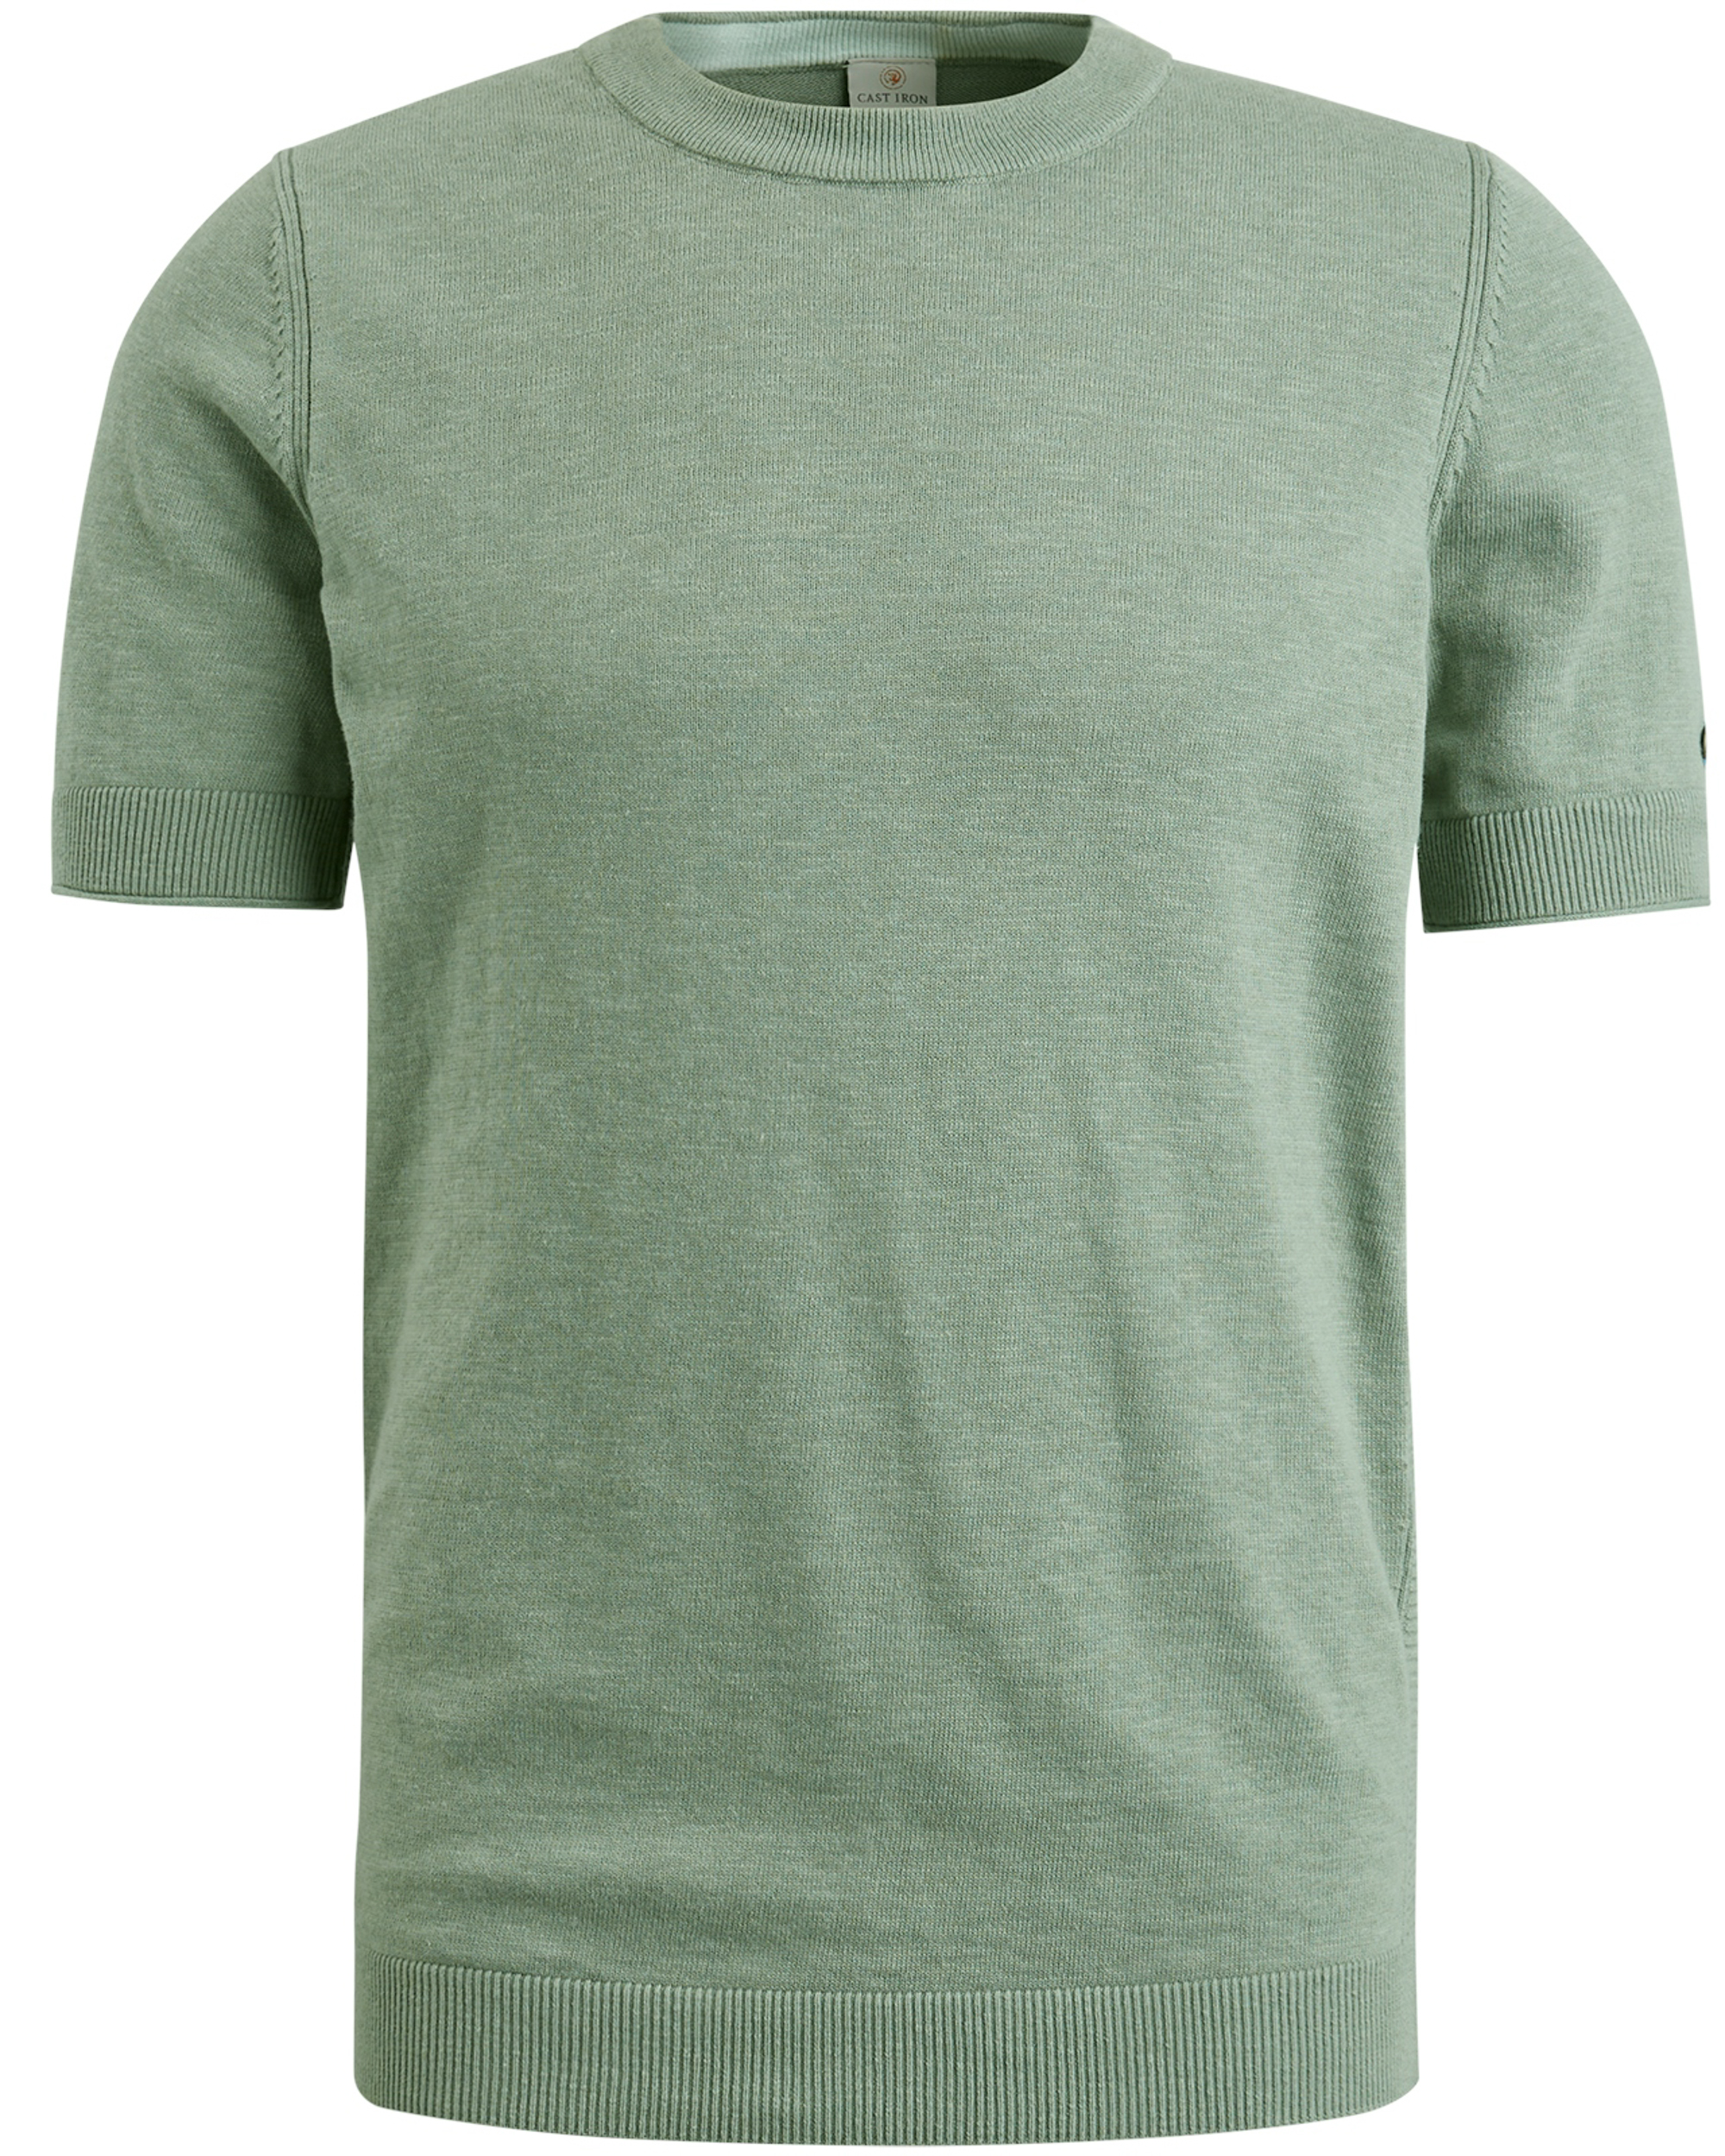 Cast Iron gebreid T-shirt met logo groen